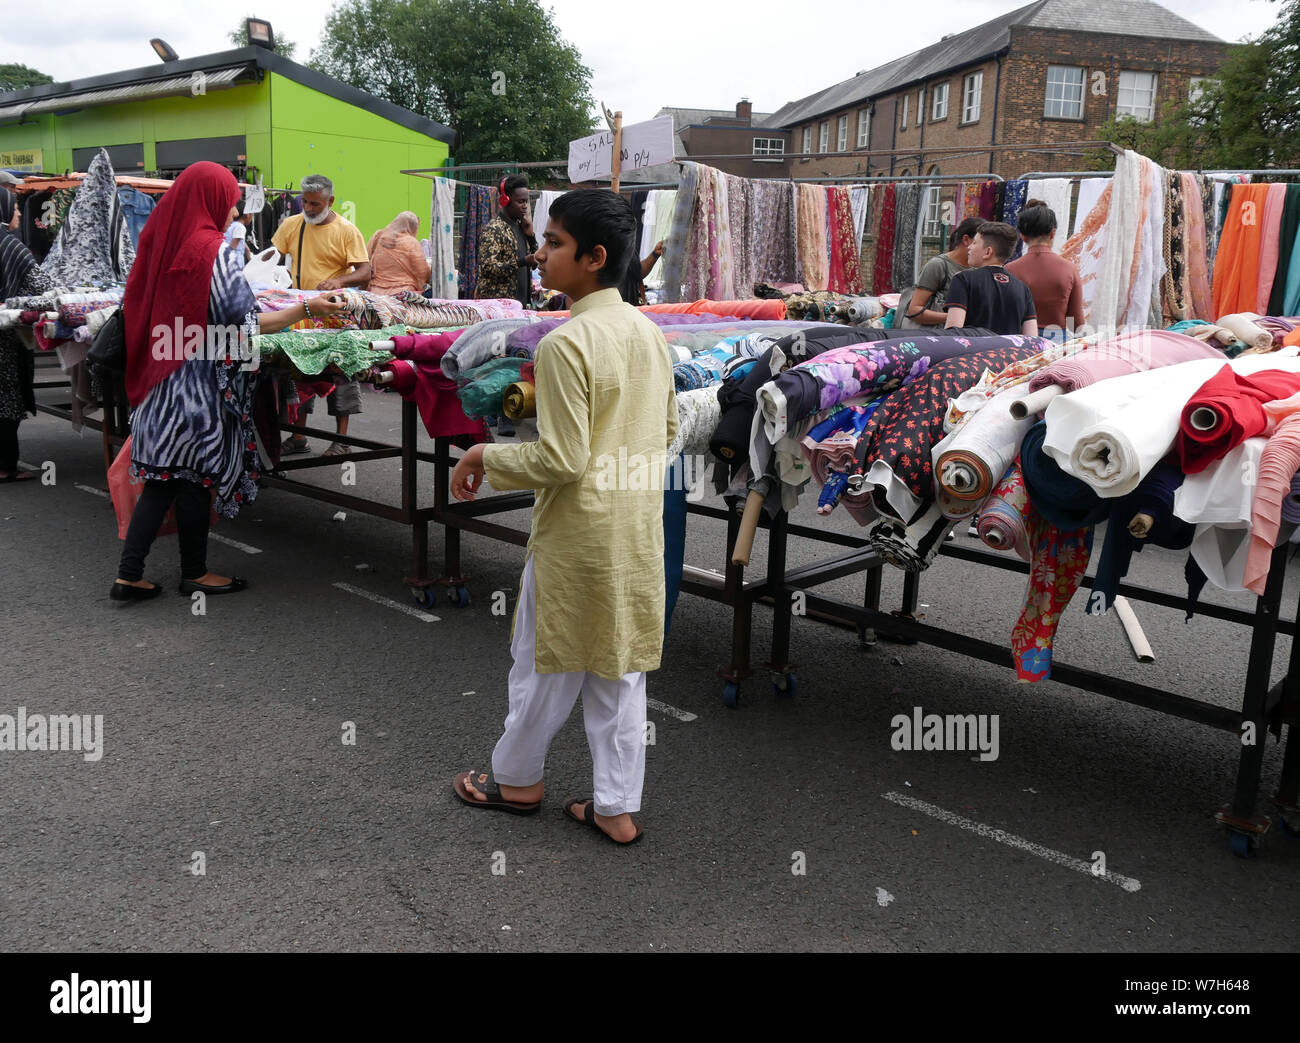 Les acheteurs asiatiques à la recherche de rouleaux de tissus et matériaux alors que des magasins Bolton marché plein air en Angleterre. photo DON TONGE Banque D'Images